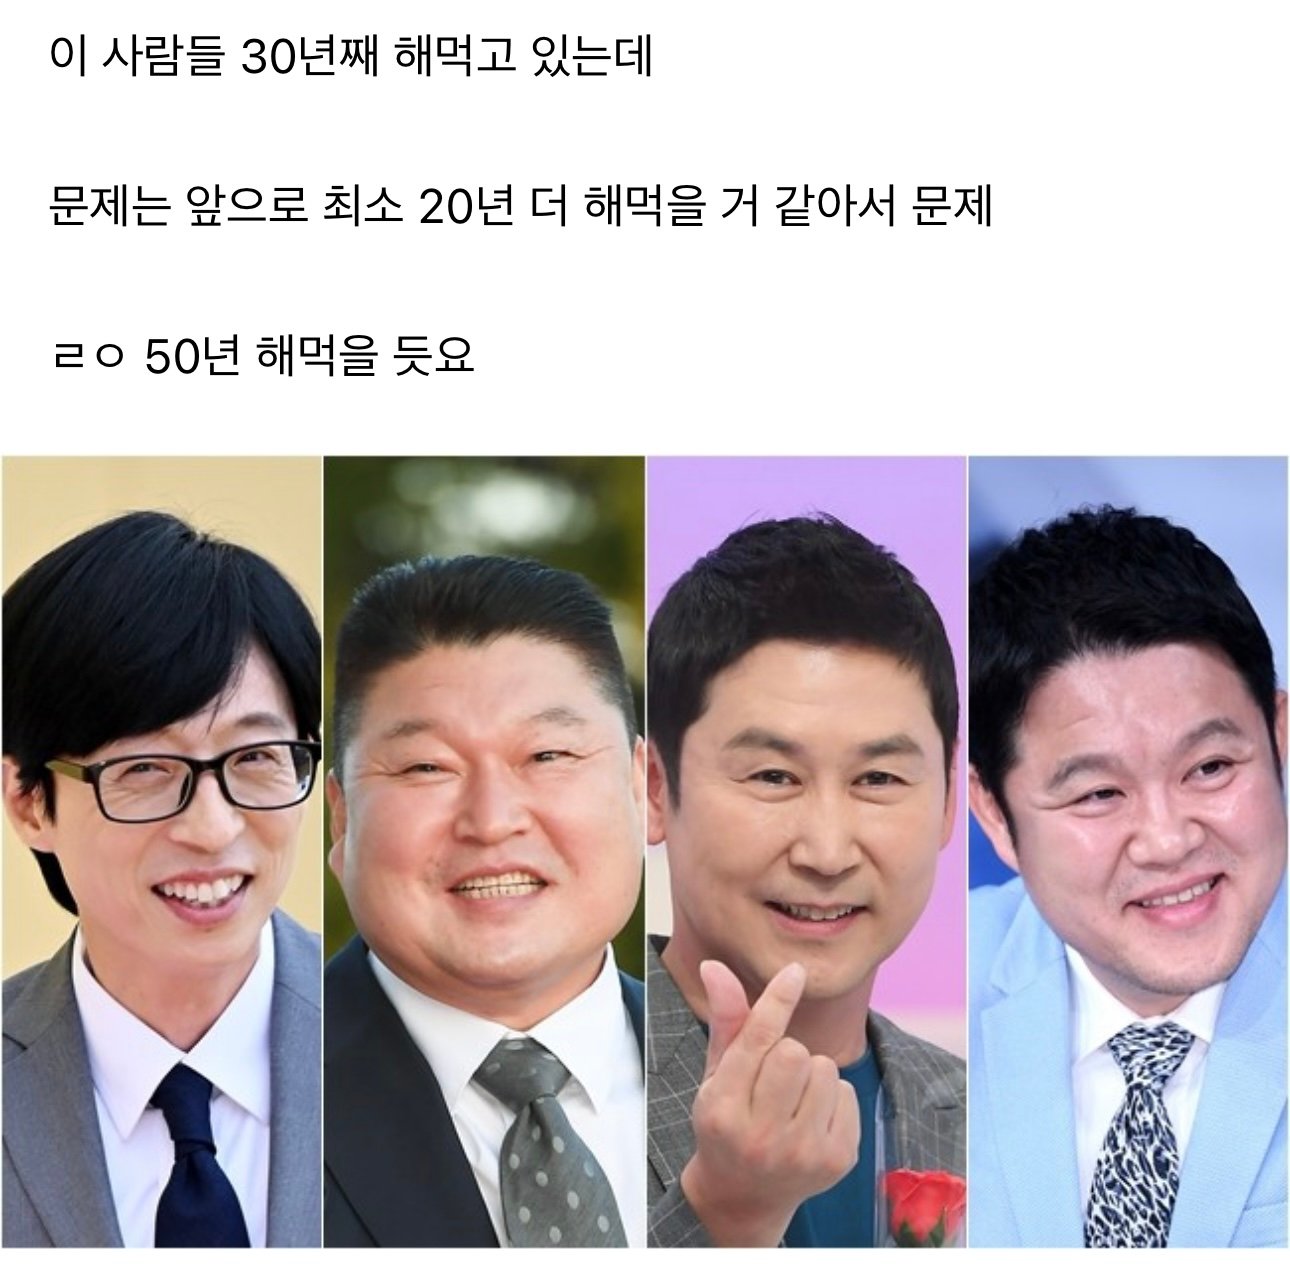 한국 예능의 문제점 끝판왕 종결.jpg